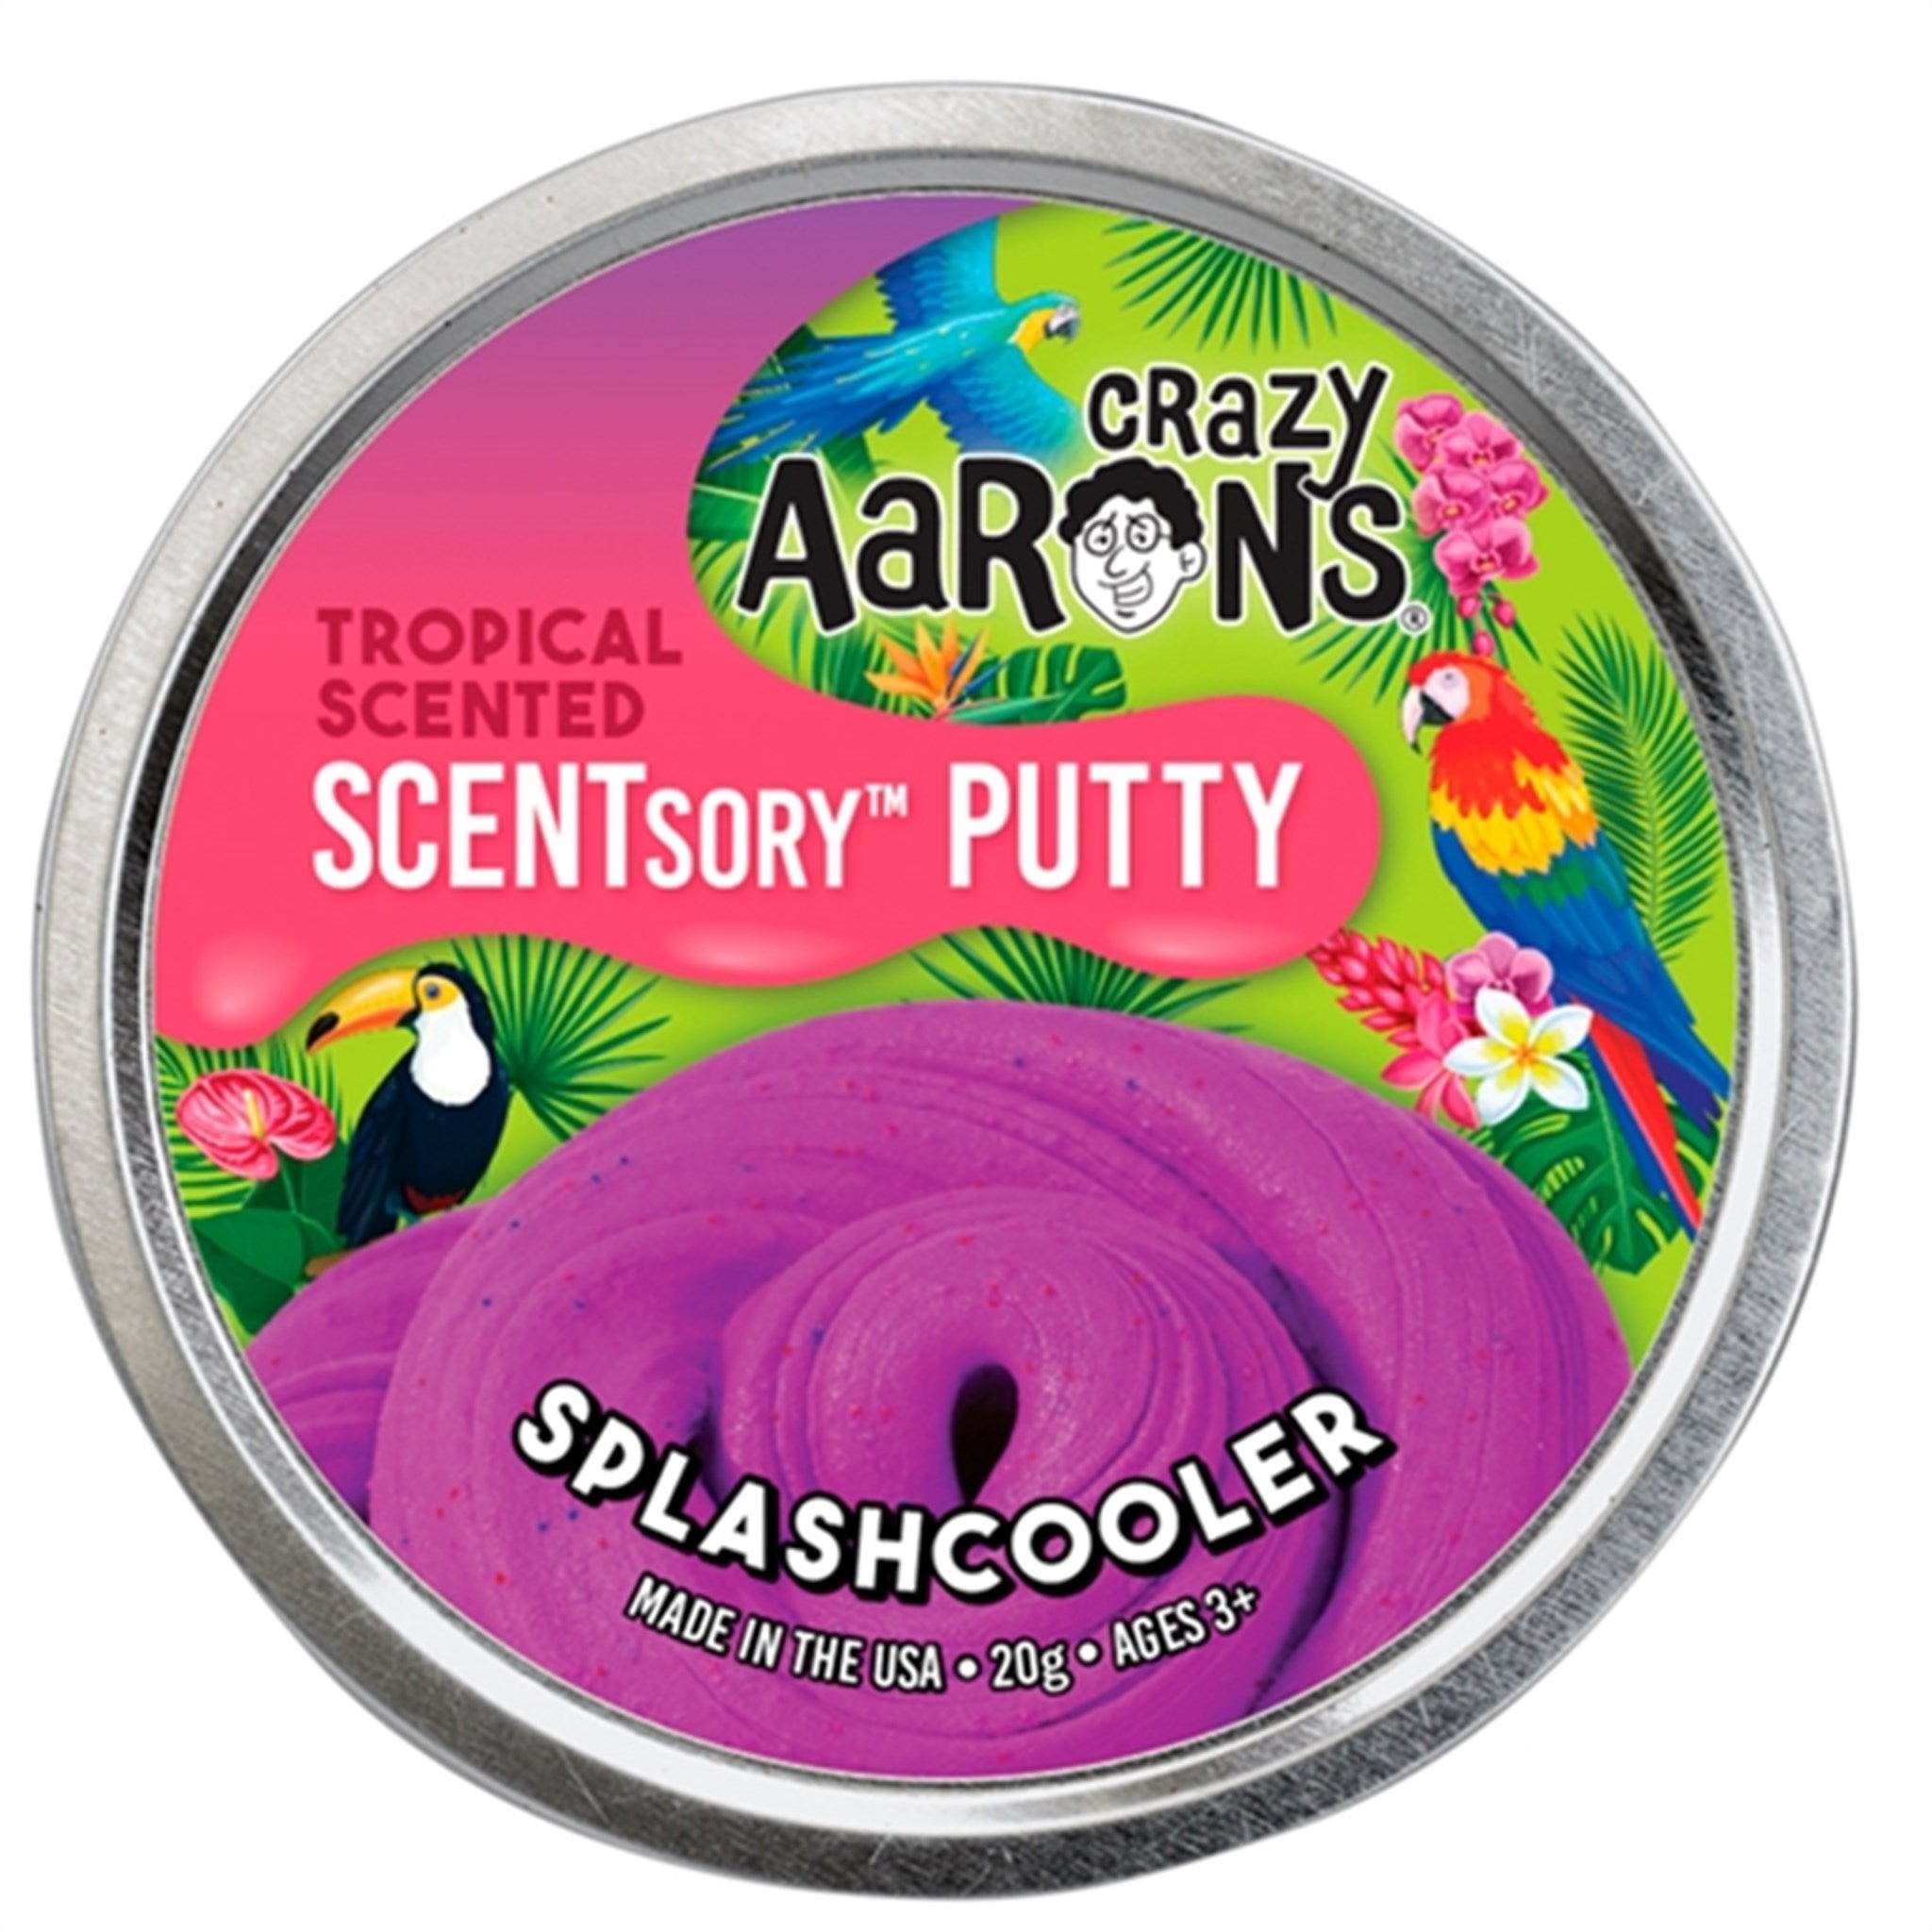 Crazy Aaron's® Slim - Scentsory Putty - Splashcooler